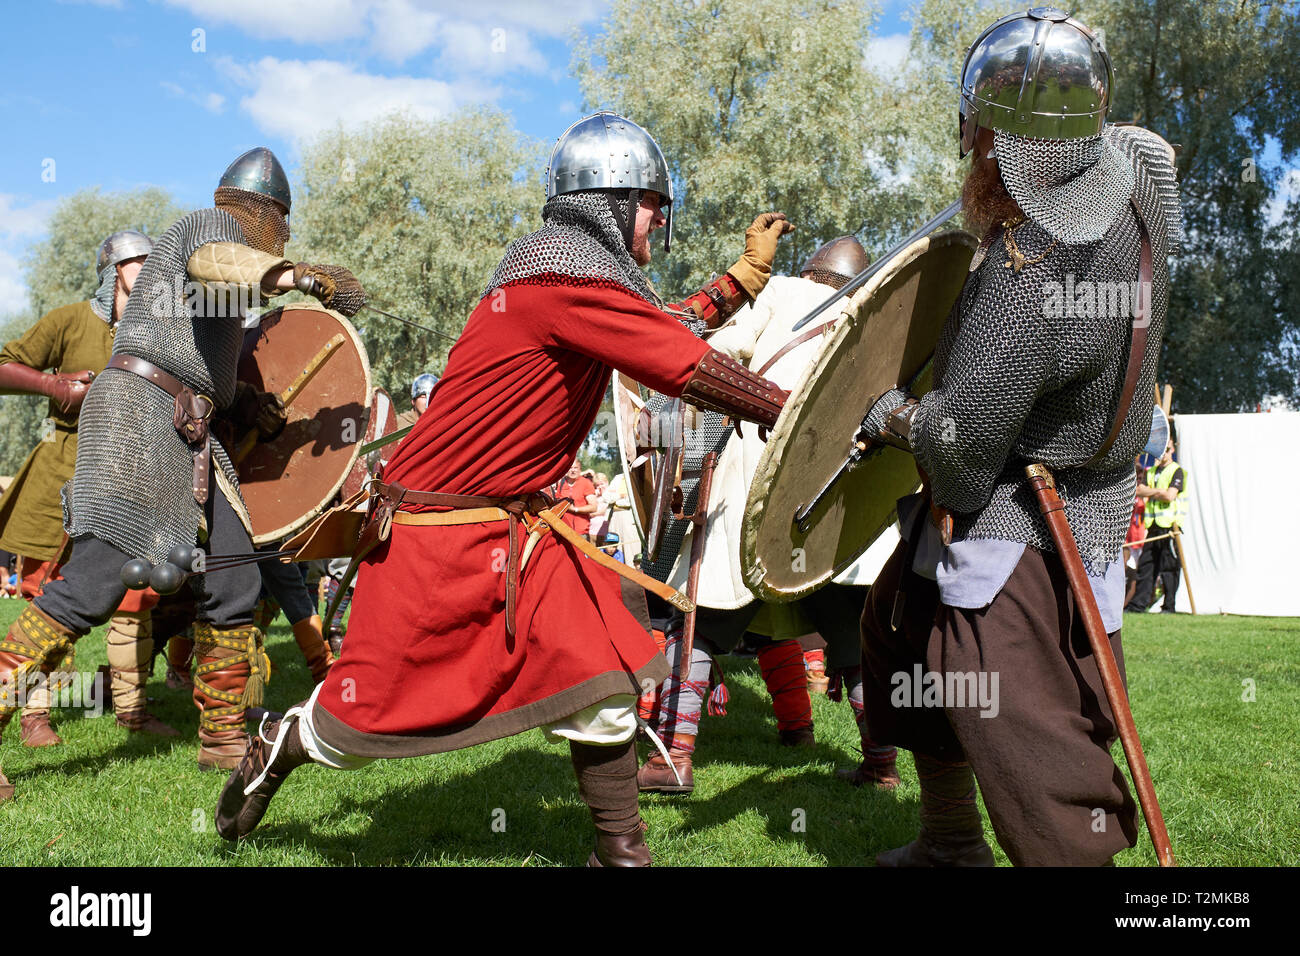 Hämeenlinna, Finnland - 17. August 2014: Wikinger Kampf mit Schwertern und Schilden auf der mittelalterlichen Festival an einem sonnigen Sommertag. Stockfoto